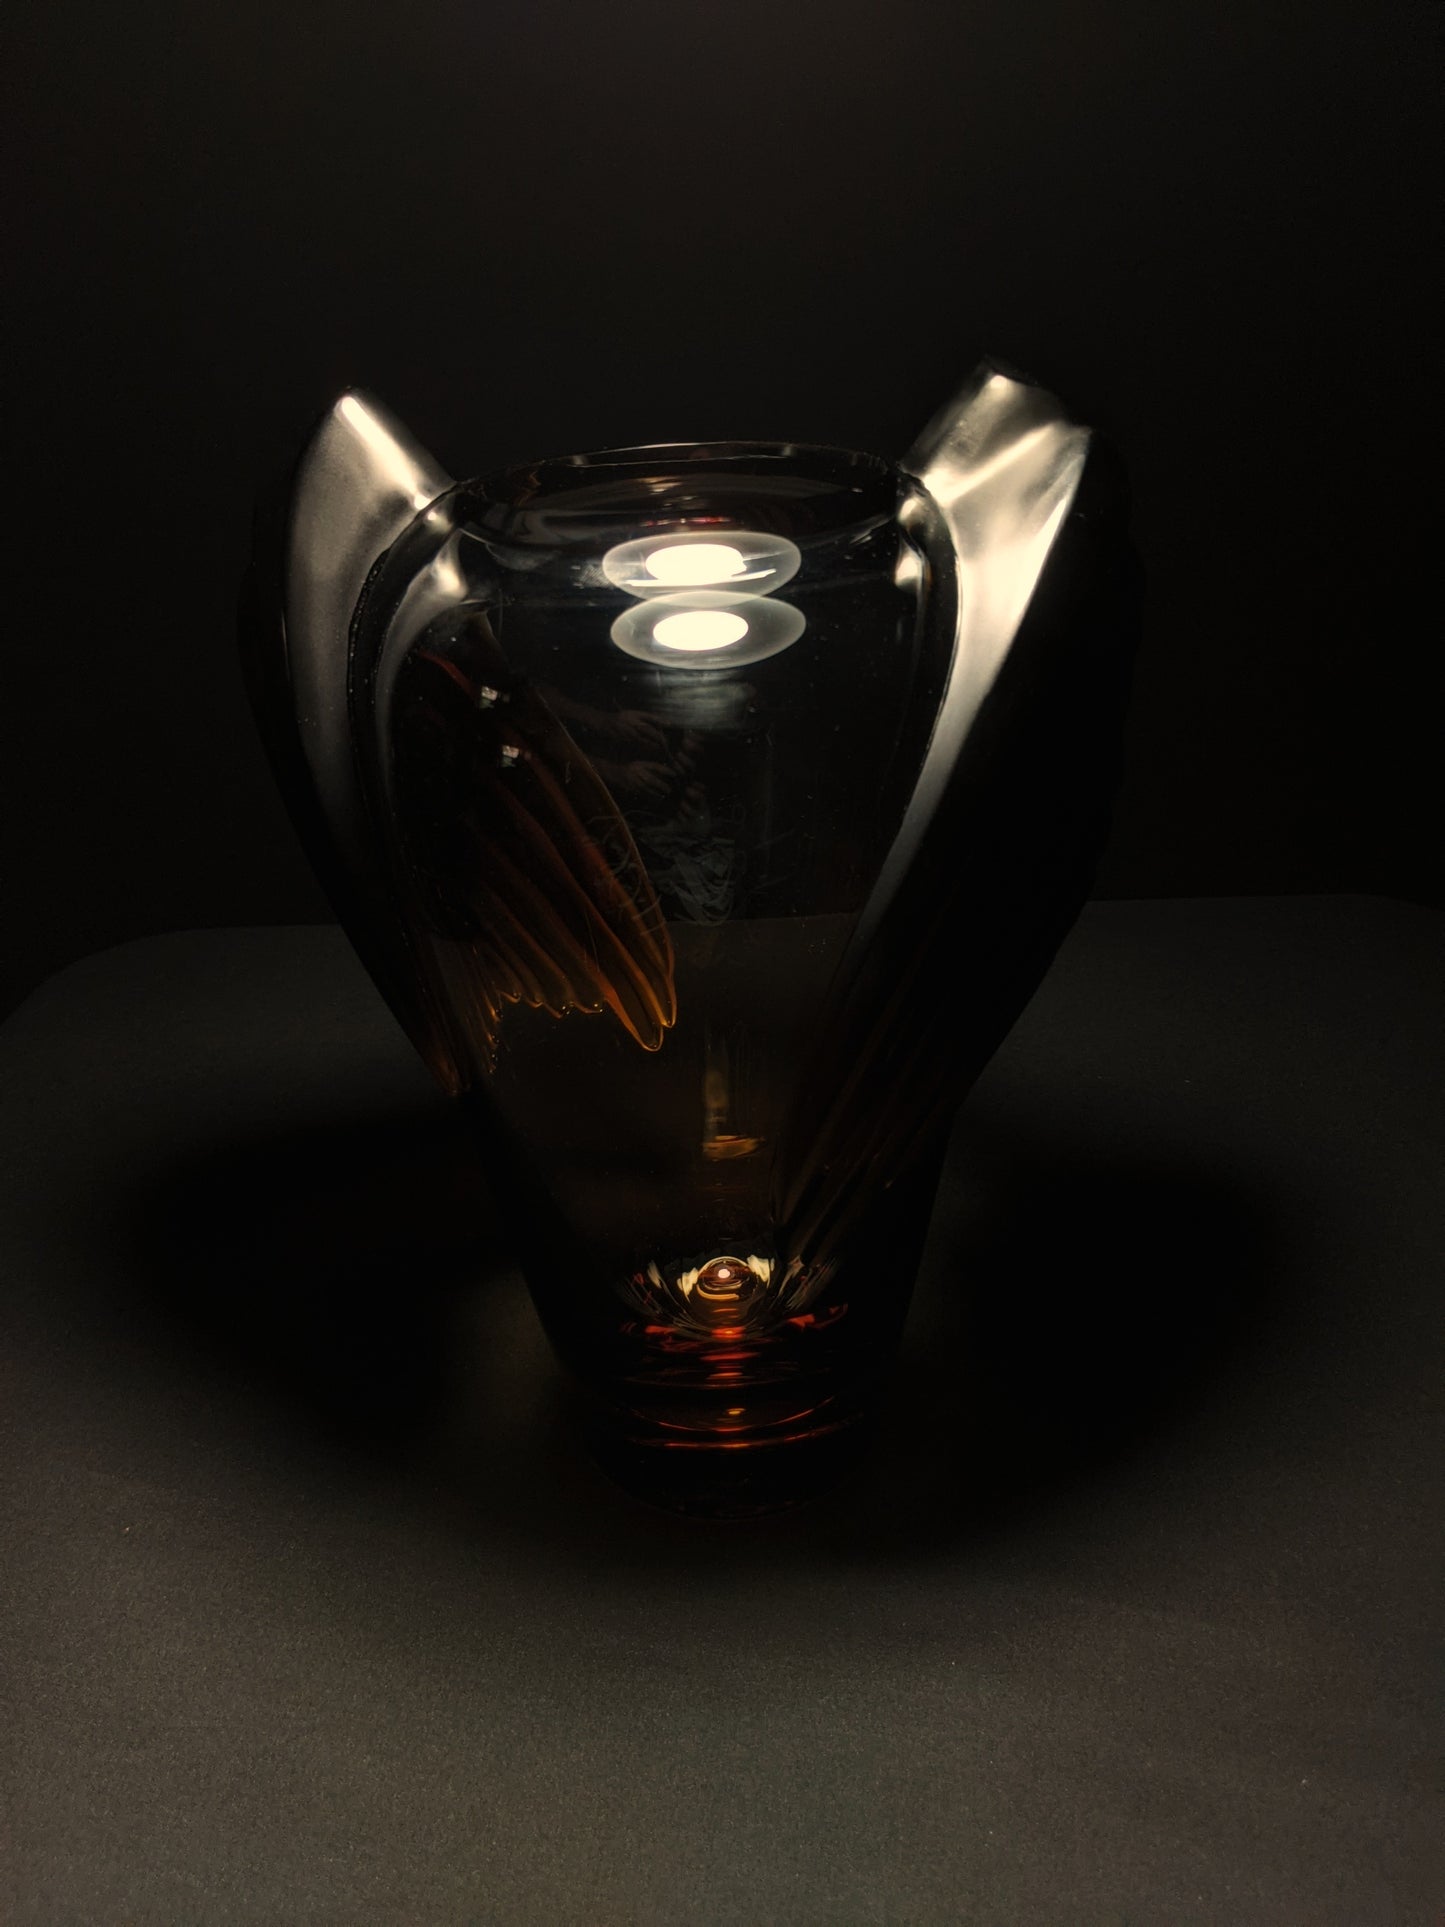 LALIQUE "Marrakech" Vintage Sculptural Artglass Vase